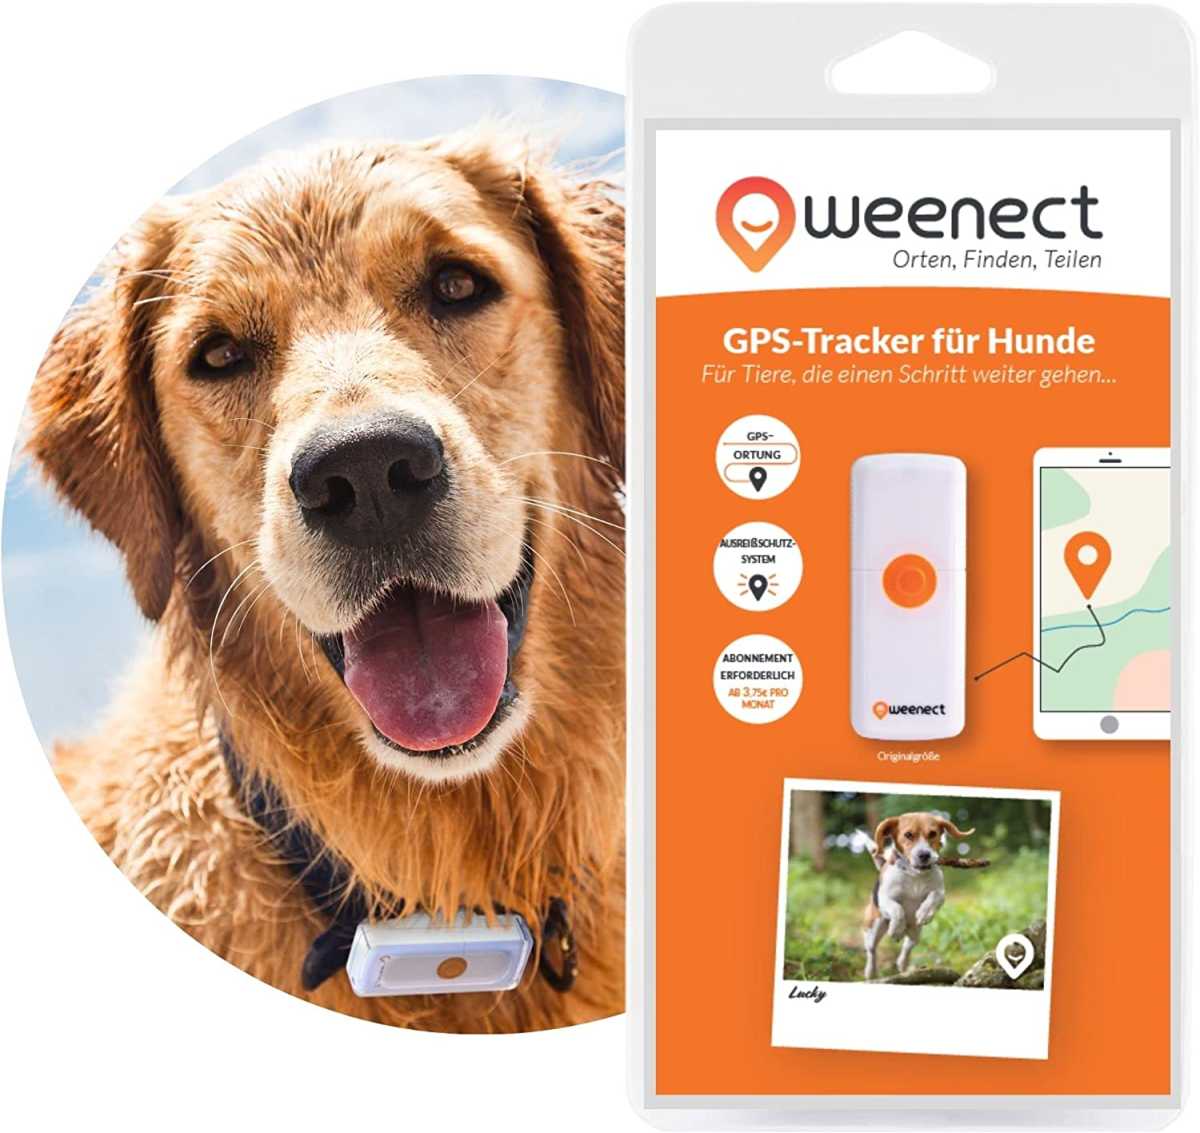 GPS-Tracker für Hunde – Weenect